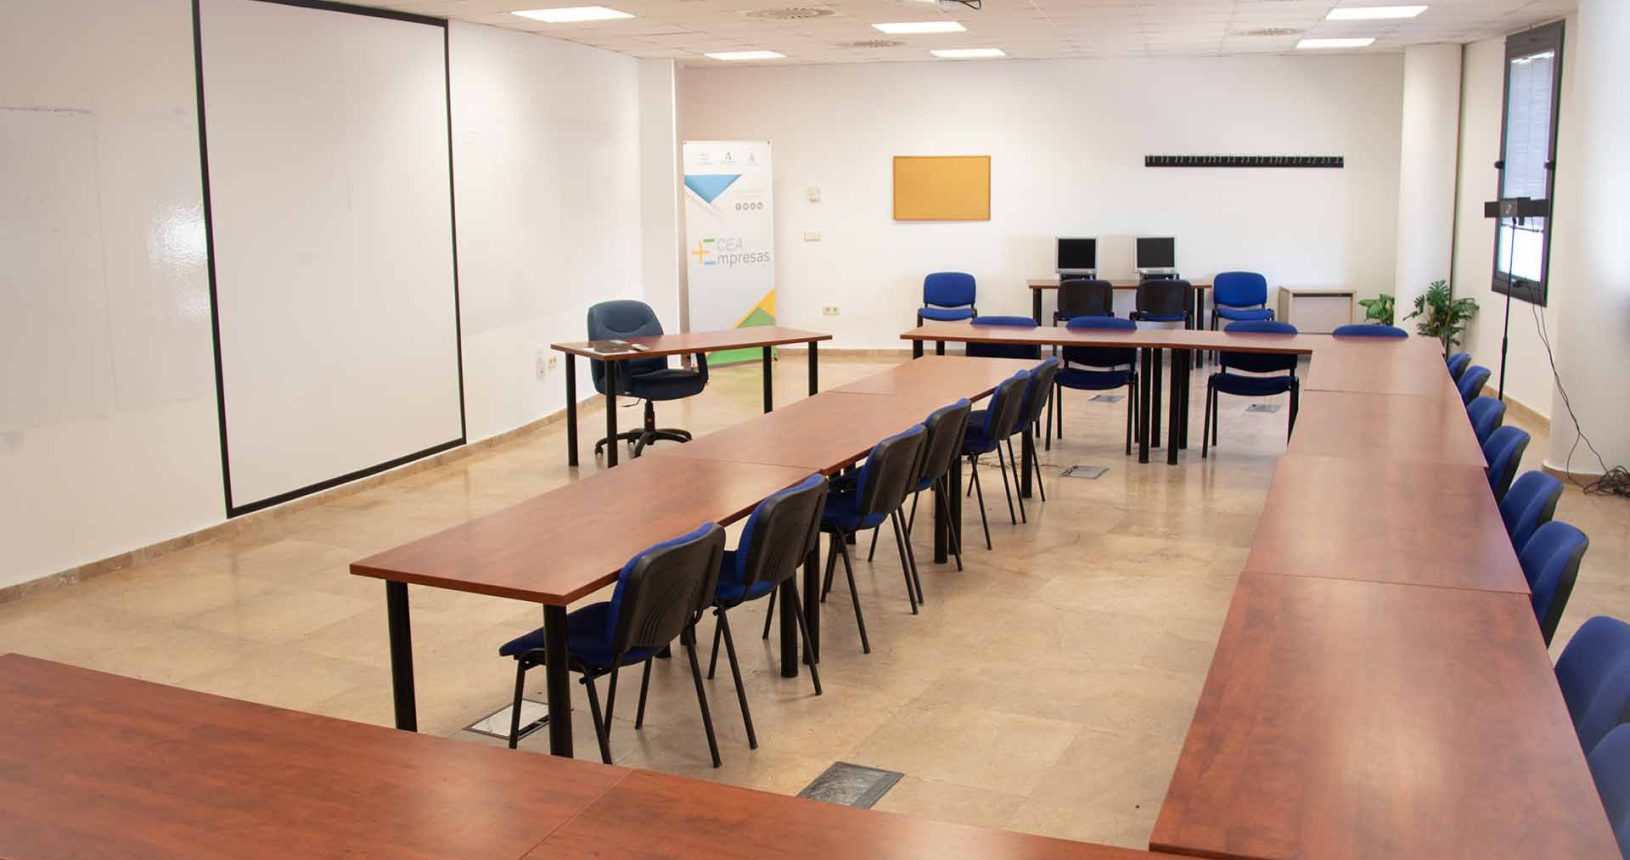 Aula para formación empresarial en Huelva